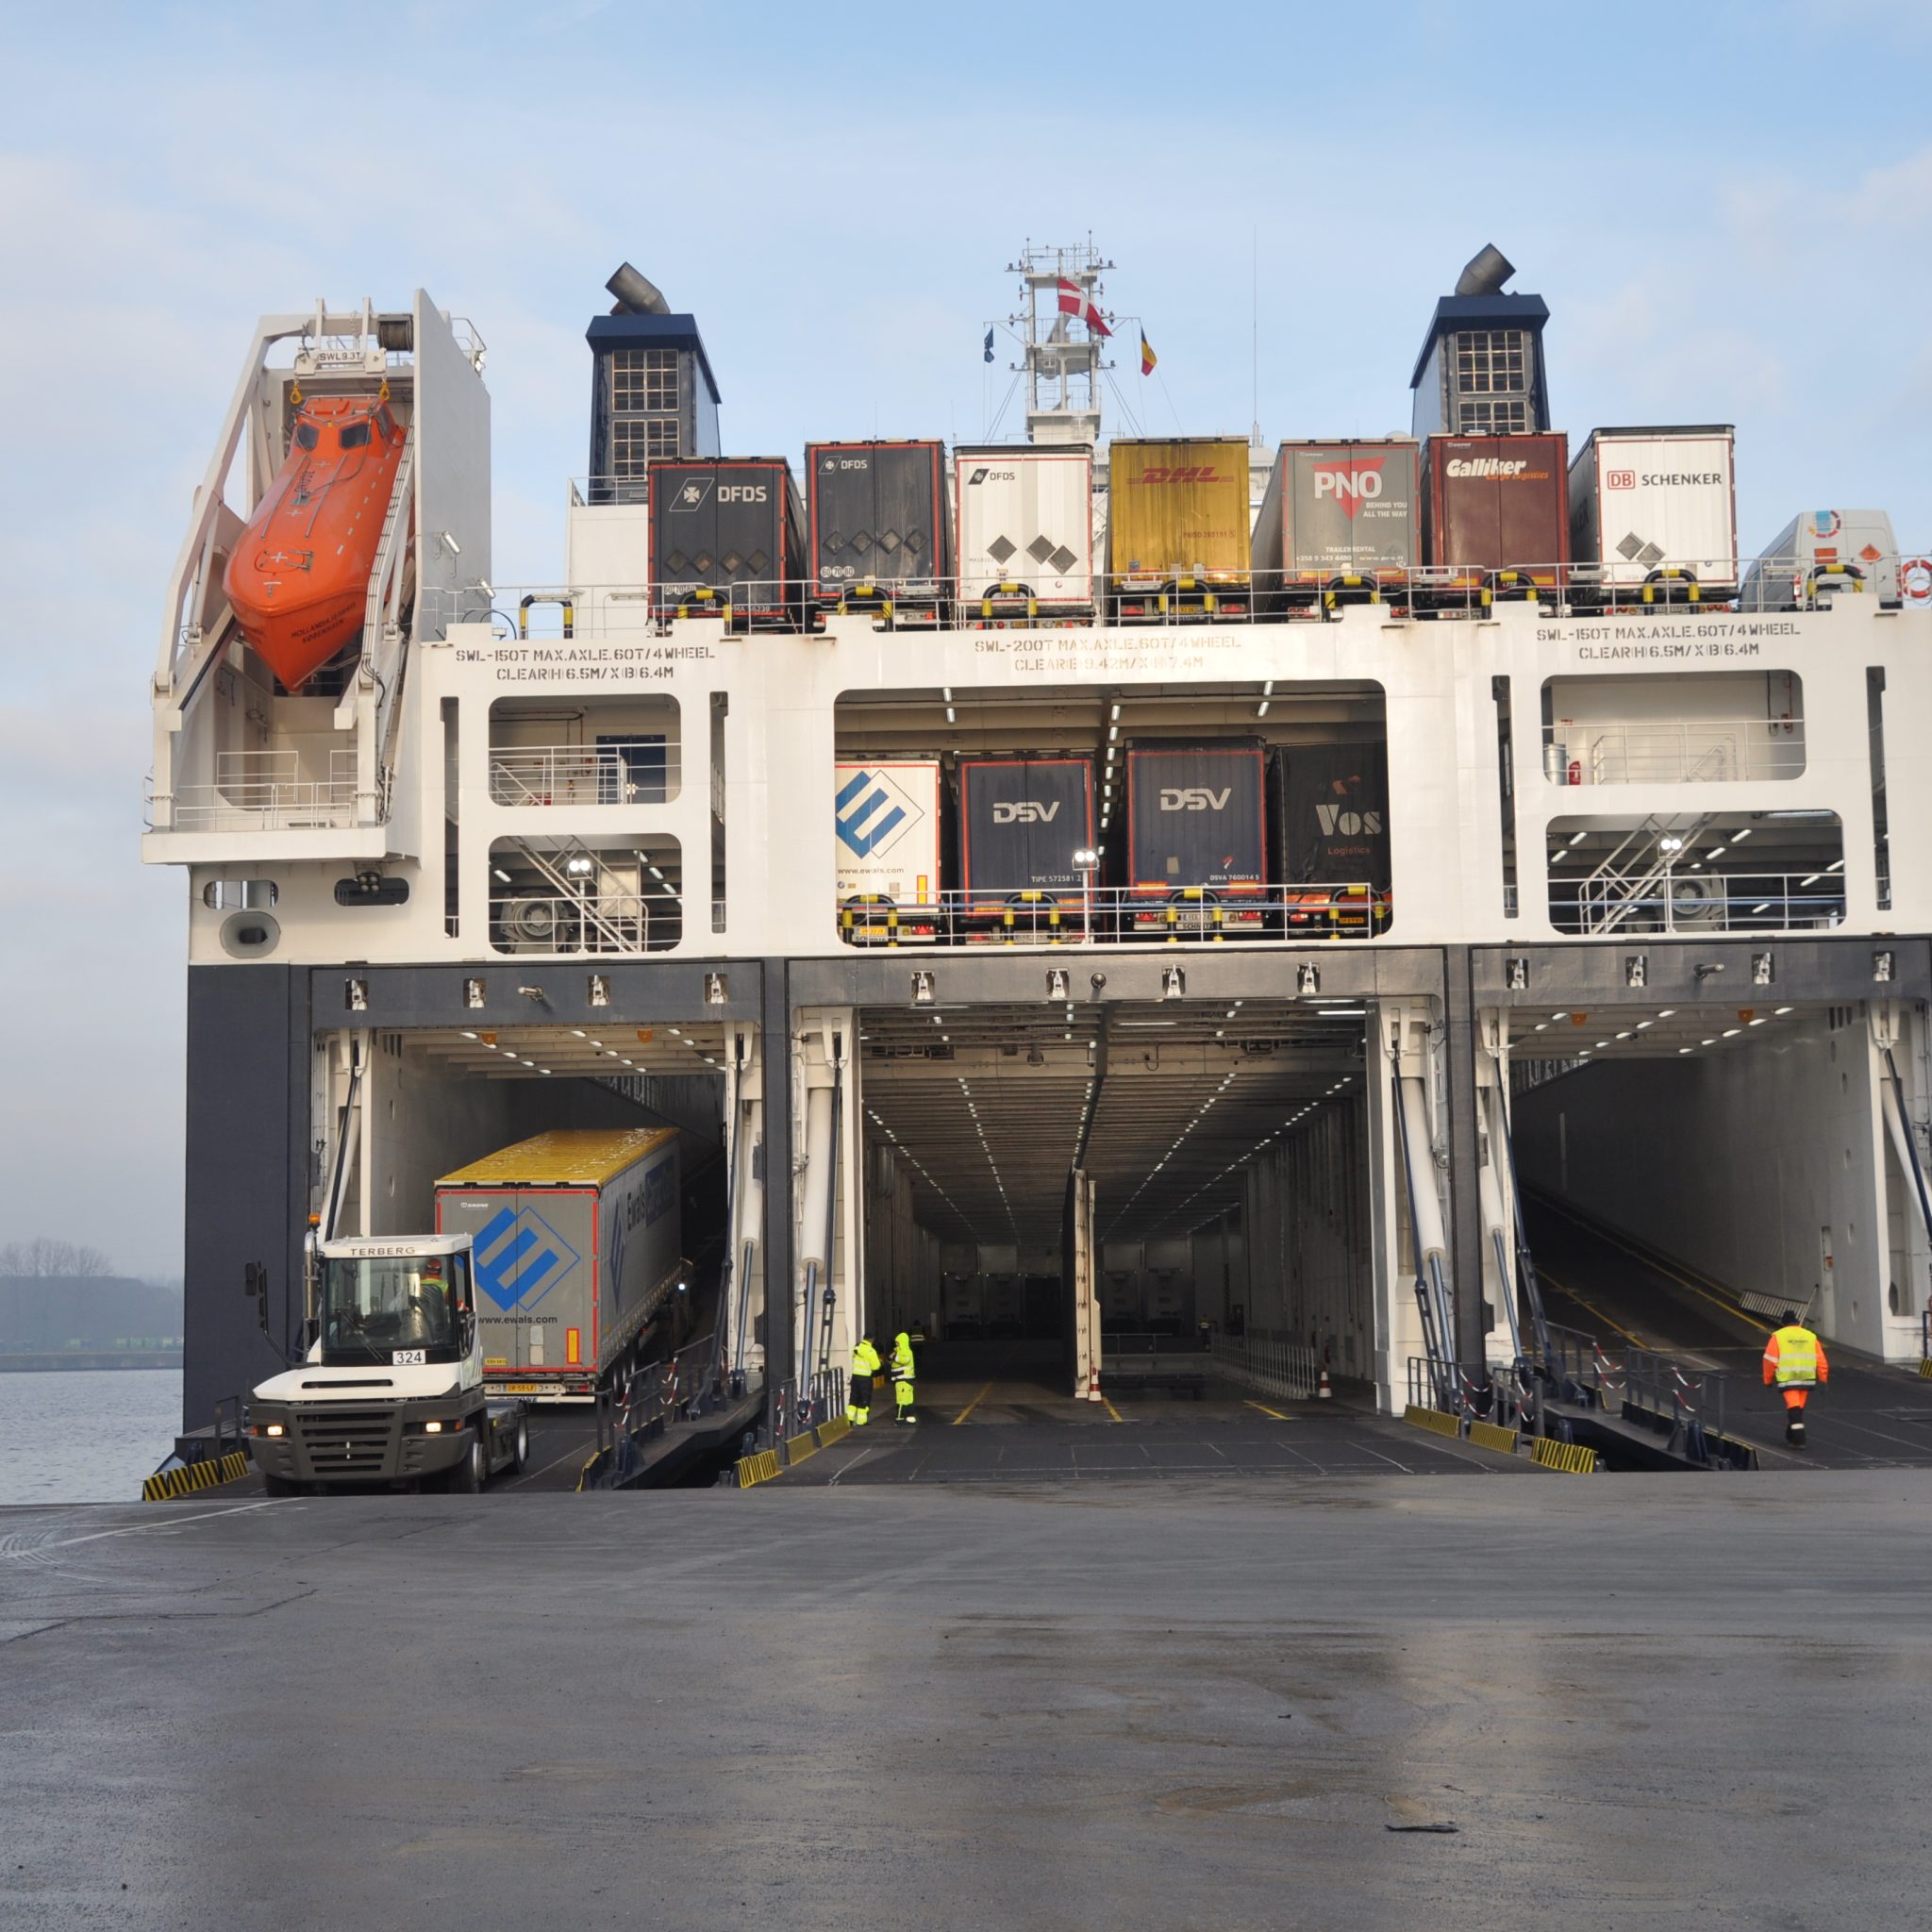 De Hollandia Seaways is voorzien van een uniek laadkleppensysteem: drie onafhankelijke laadkleppen, die tegelijk laden en lossen van trailers toelaten, wat de verblijfstijd in de haven aanzienlijk verkort. (Foto Adrie van de Wege)